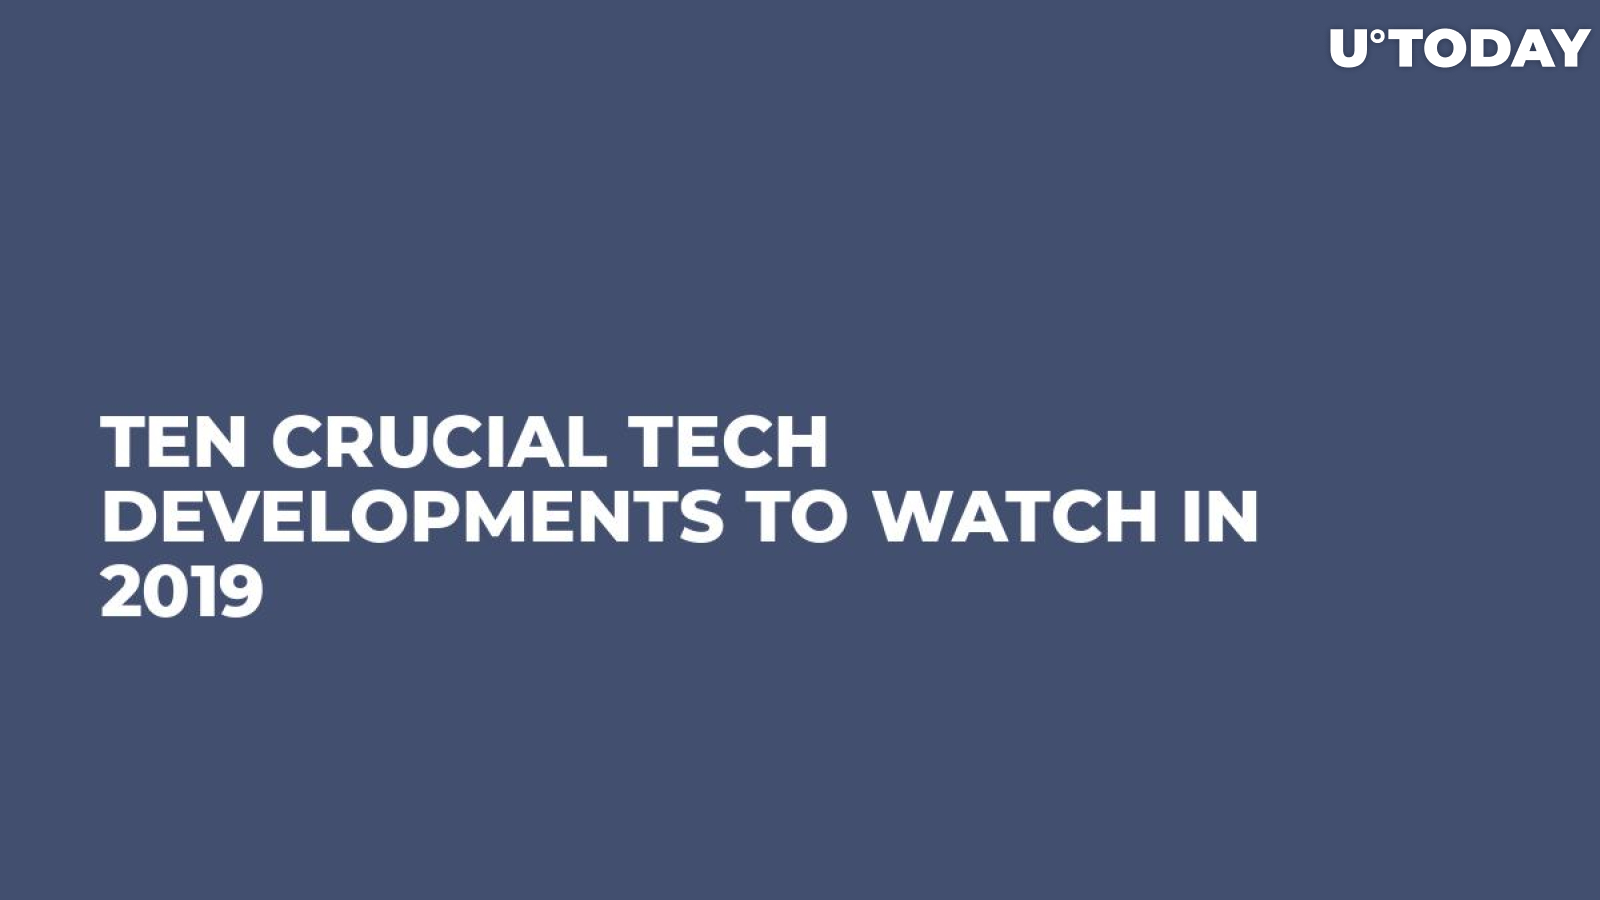 Ten Crucial Tech Developments to Watch in 2019